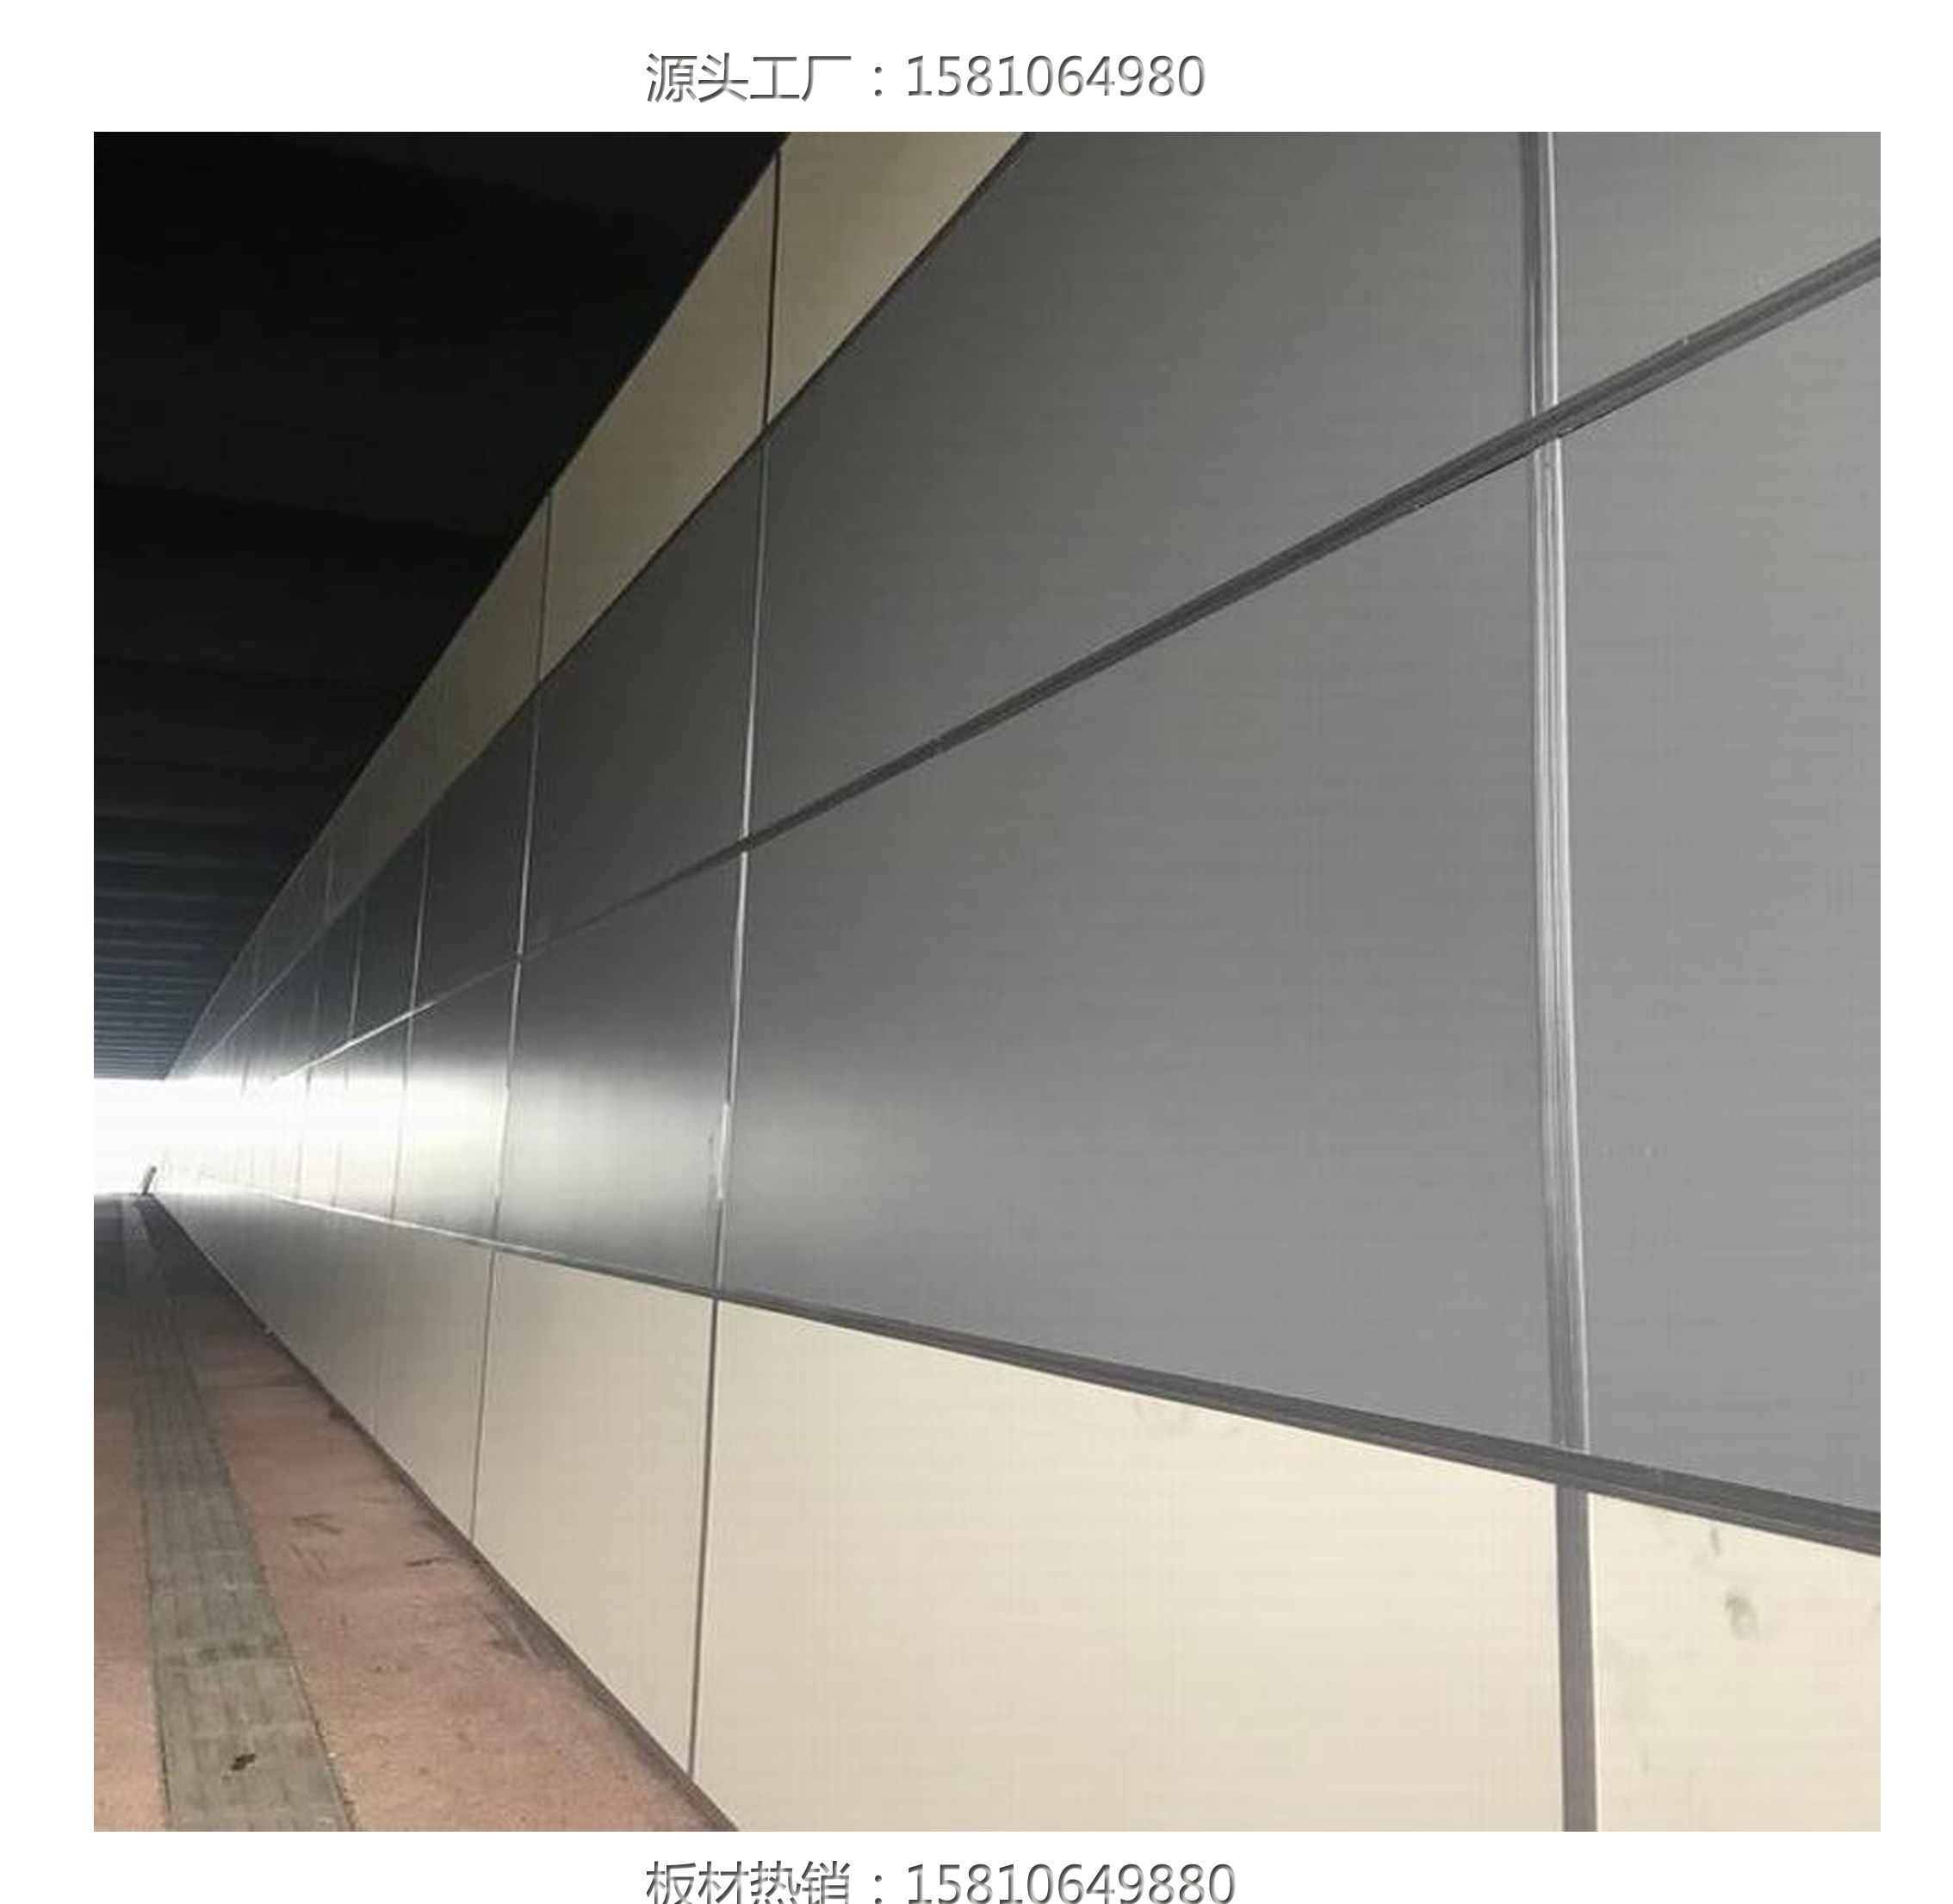 重庆铝石板；纤维水泥铝钙复合板;铝钙板；铝纤维铝石板；8mm隧道装饰板；隧道防火板1